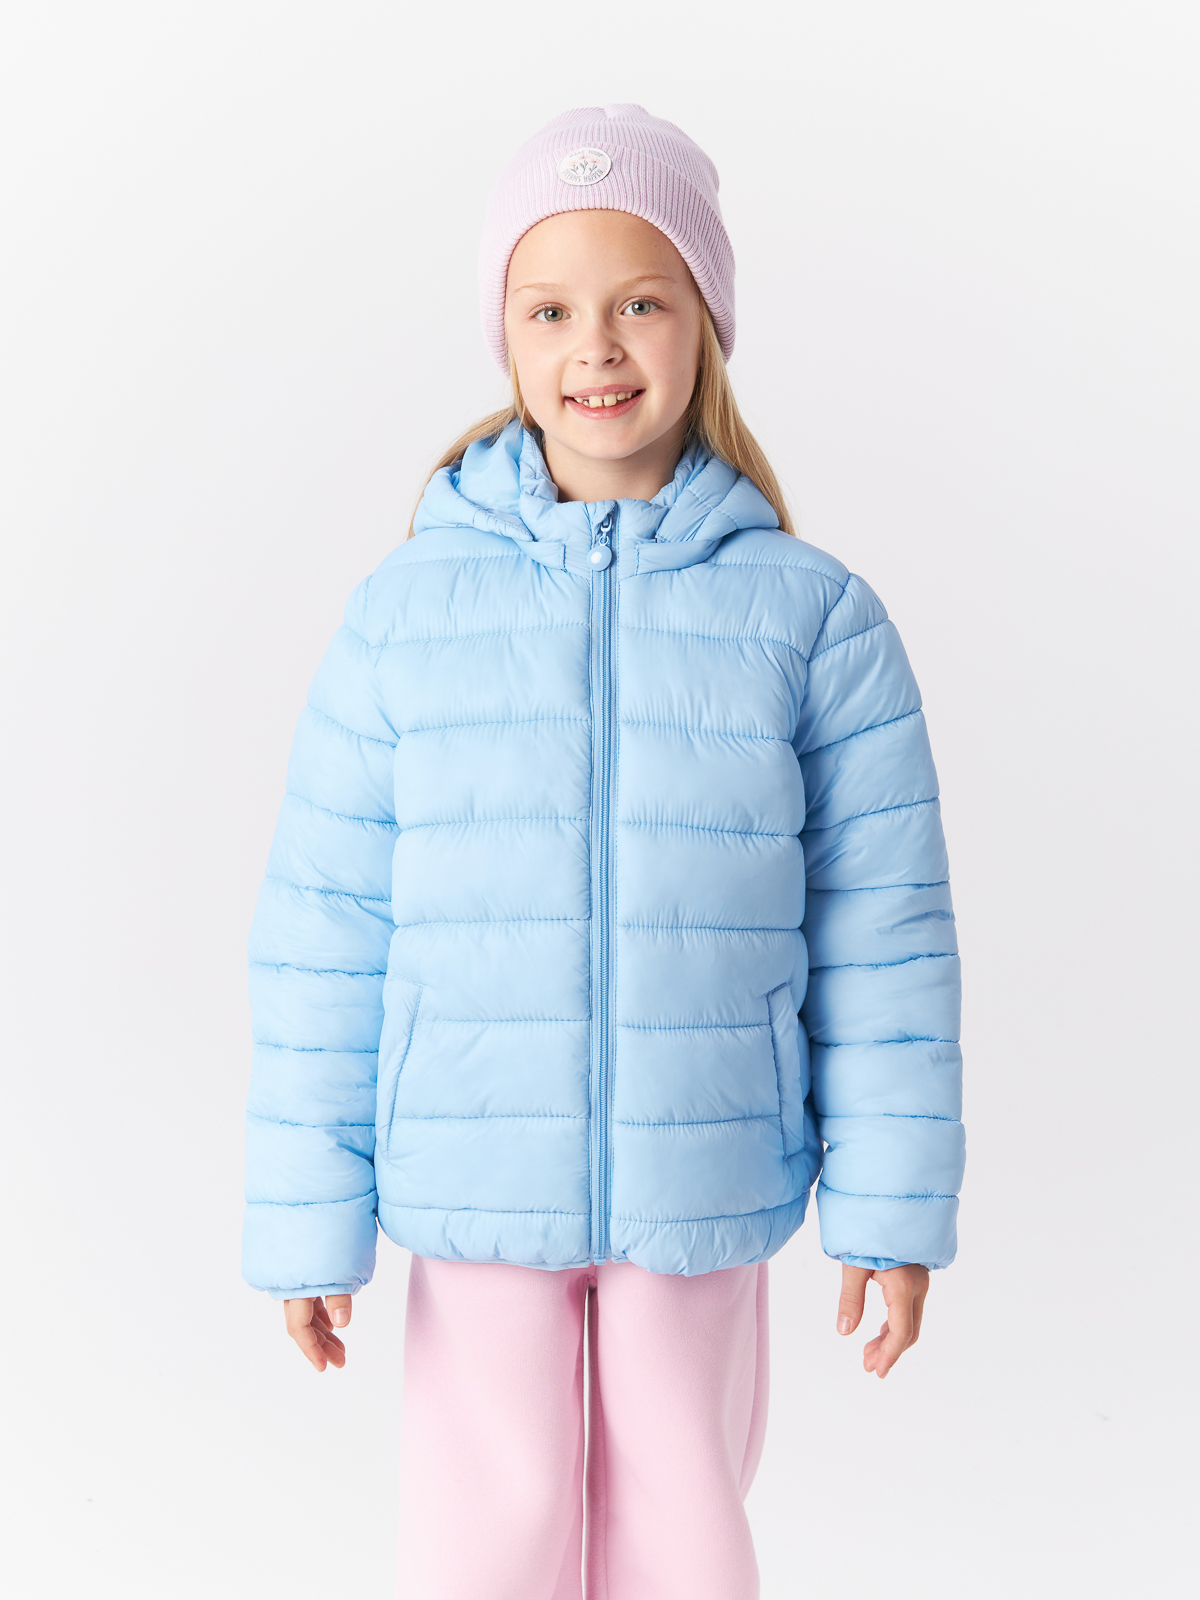 Куртка Mcstyles для девочки, размер 110, SMM14, голубая